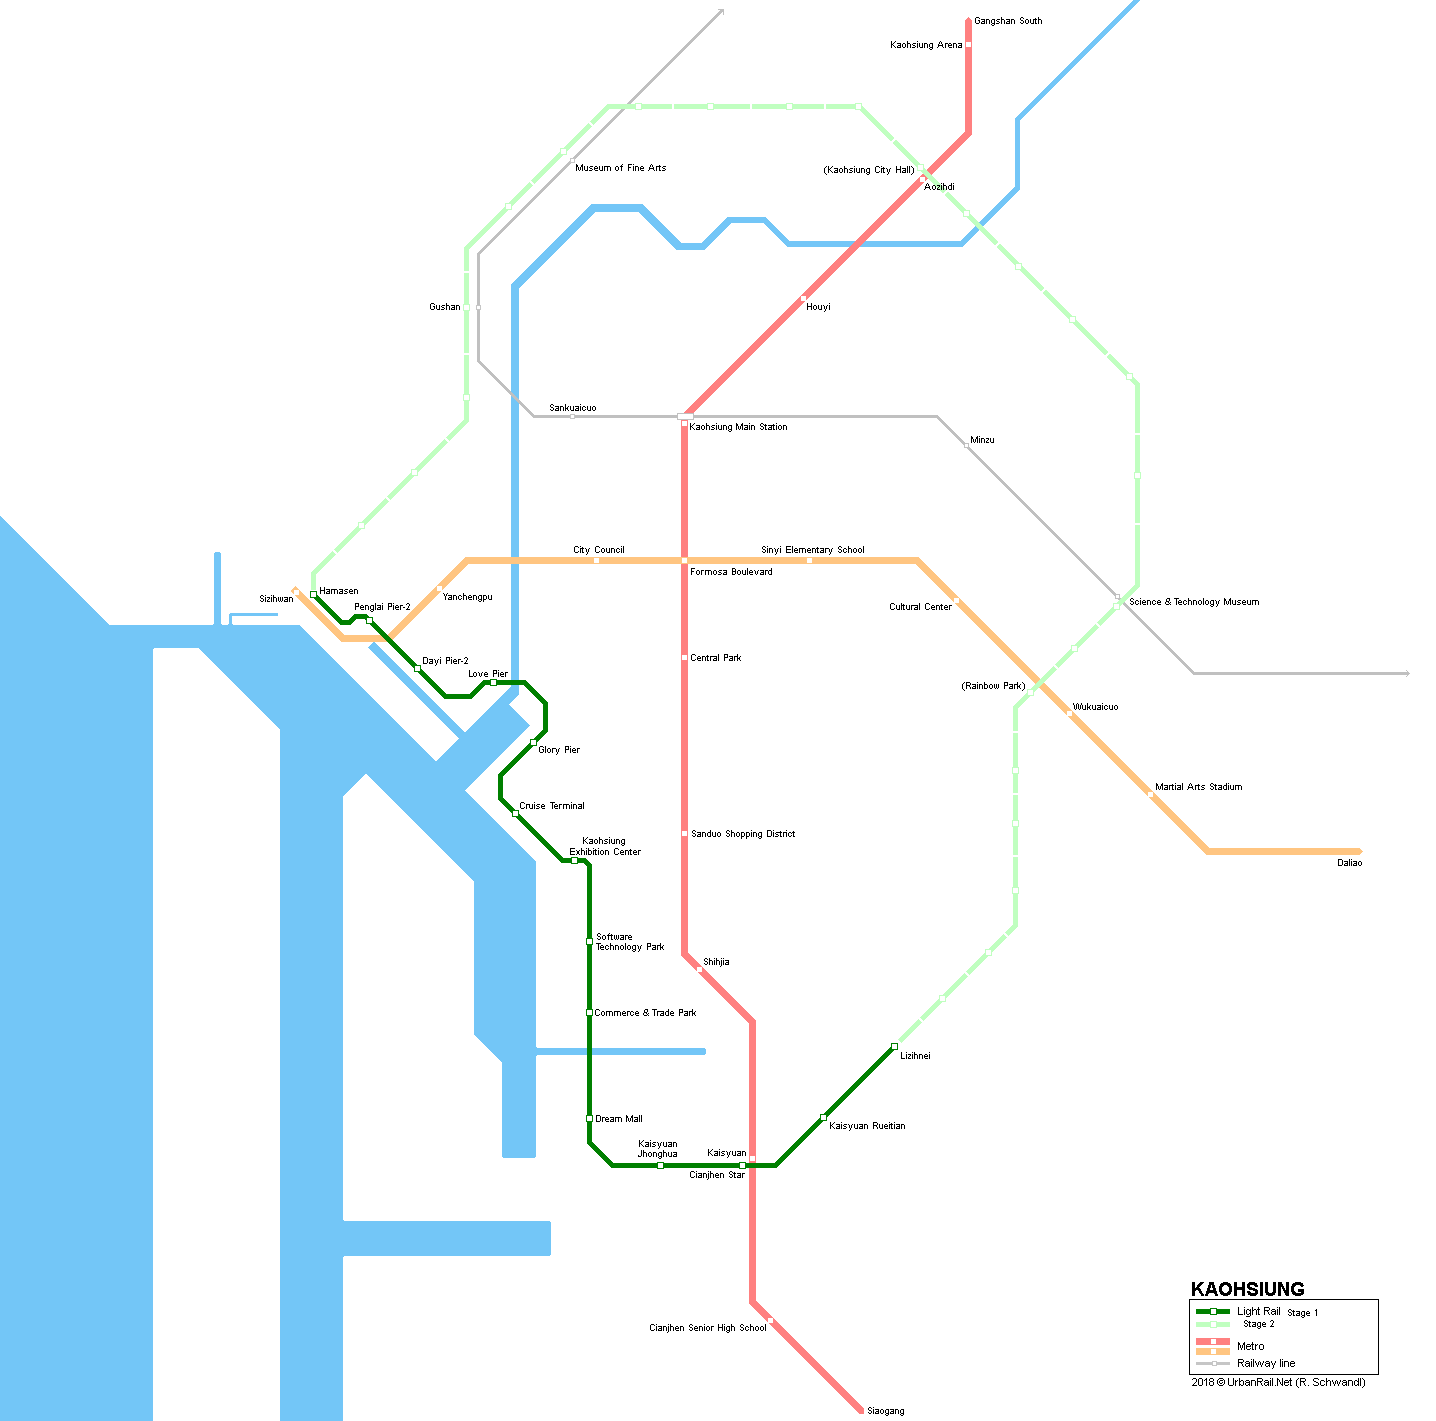 Kaohsiung tram / light rail map